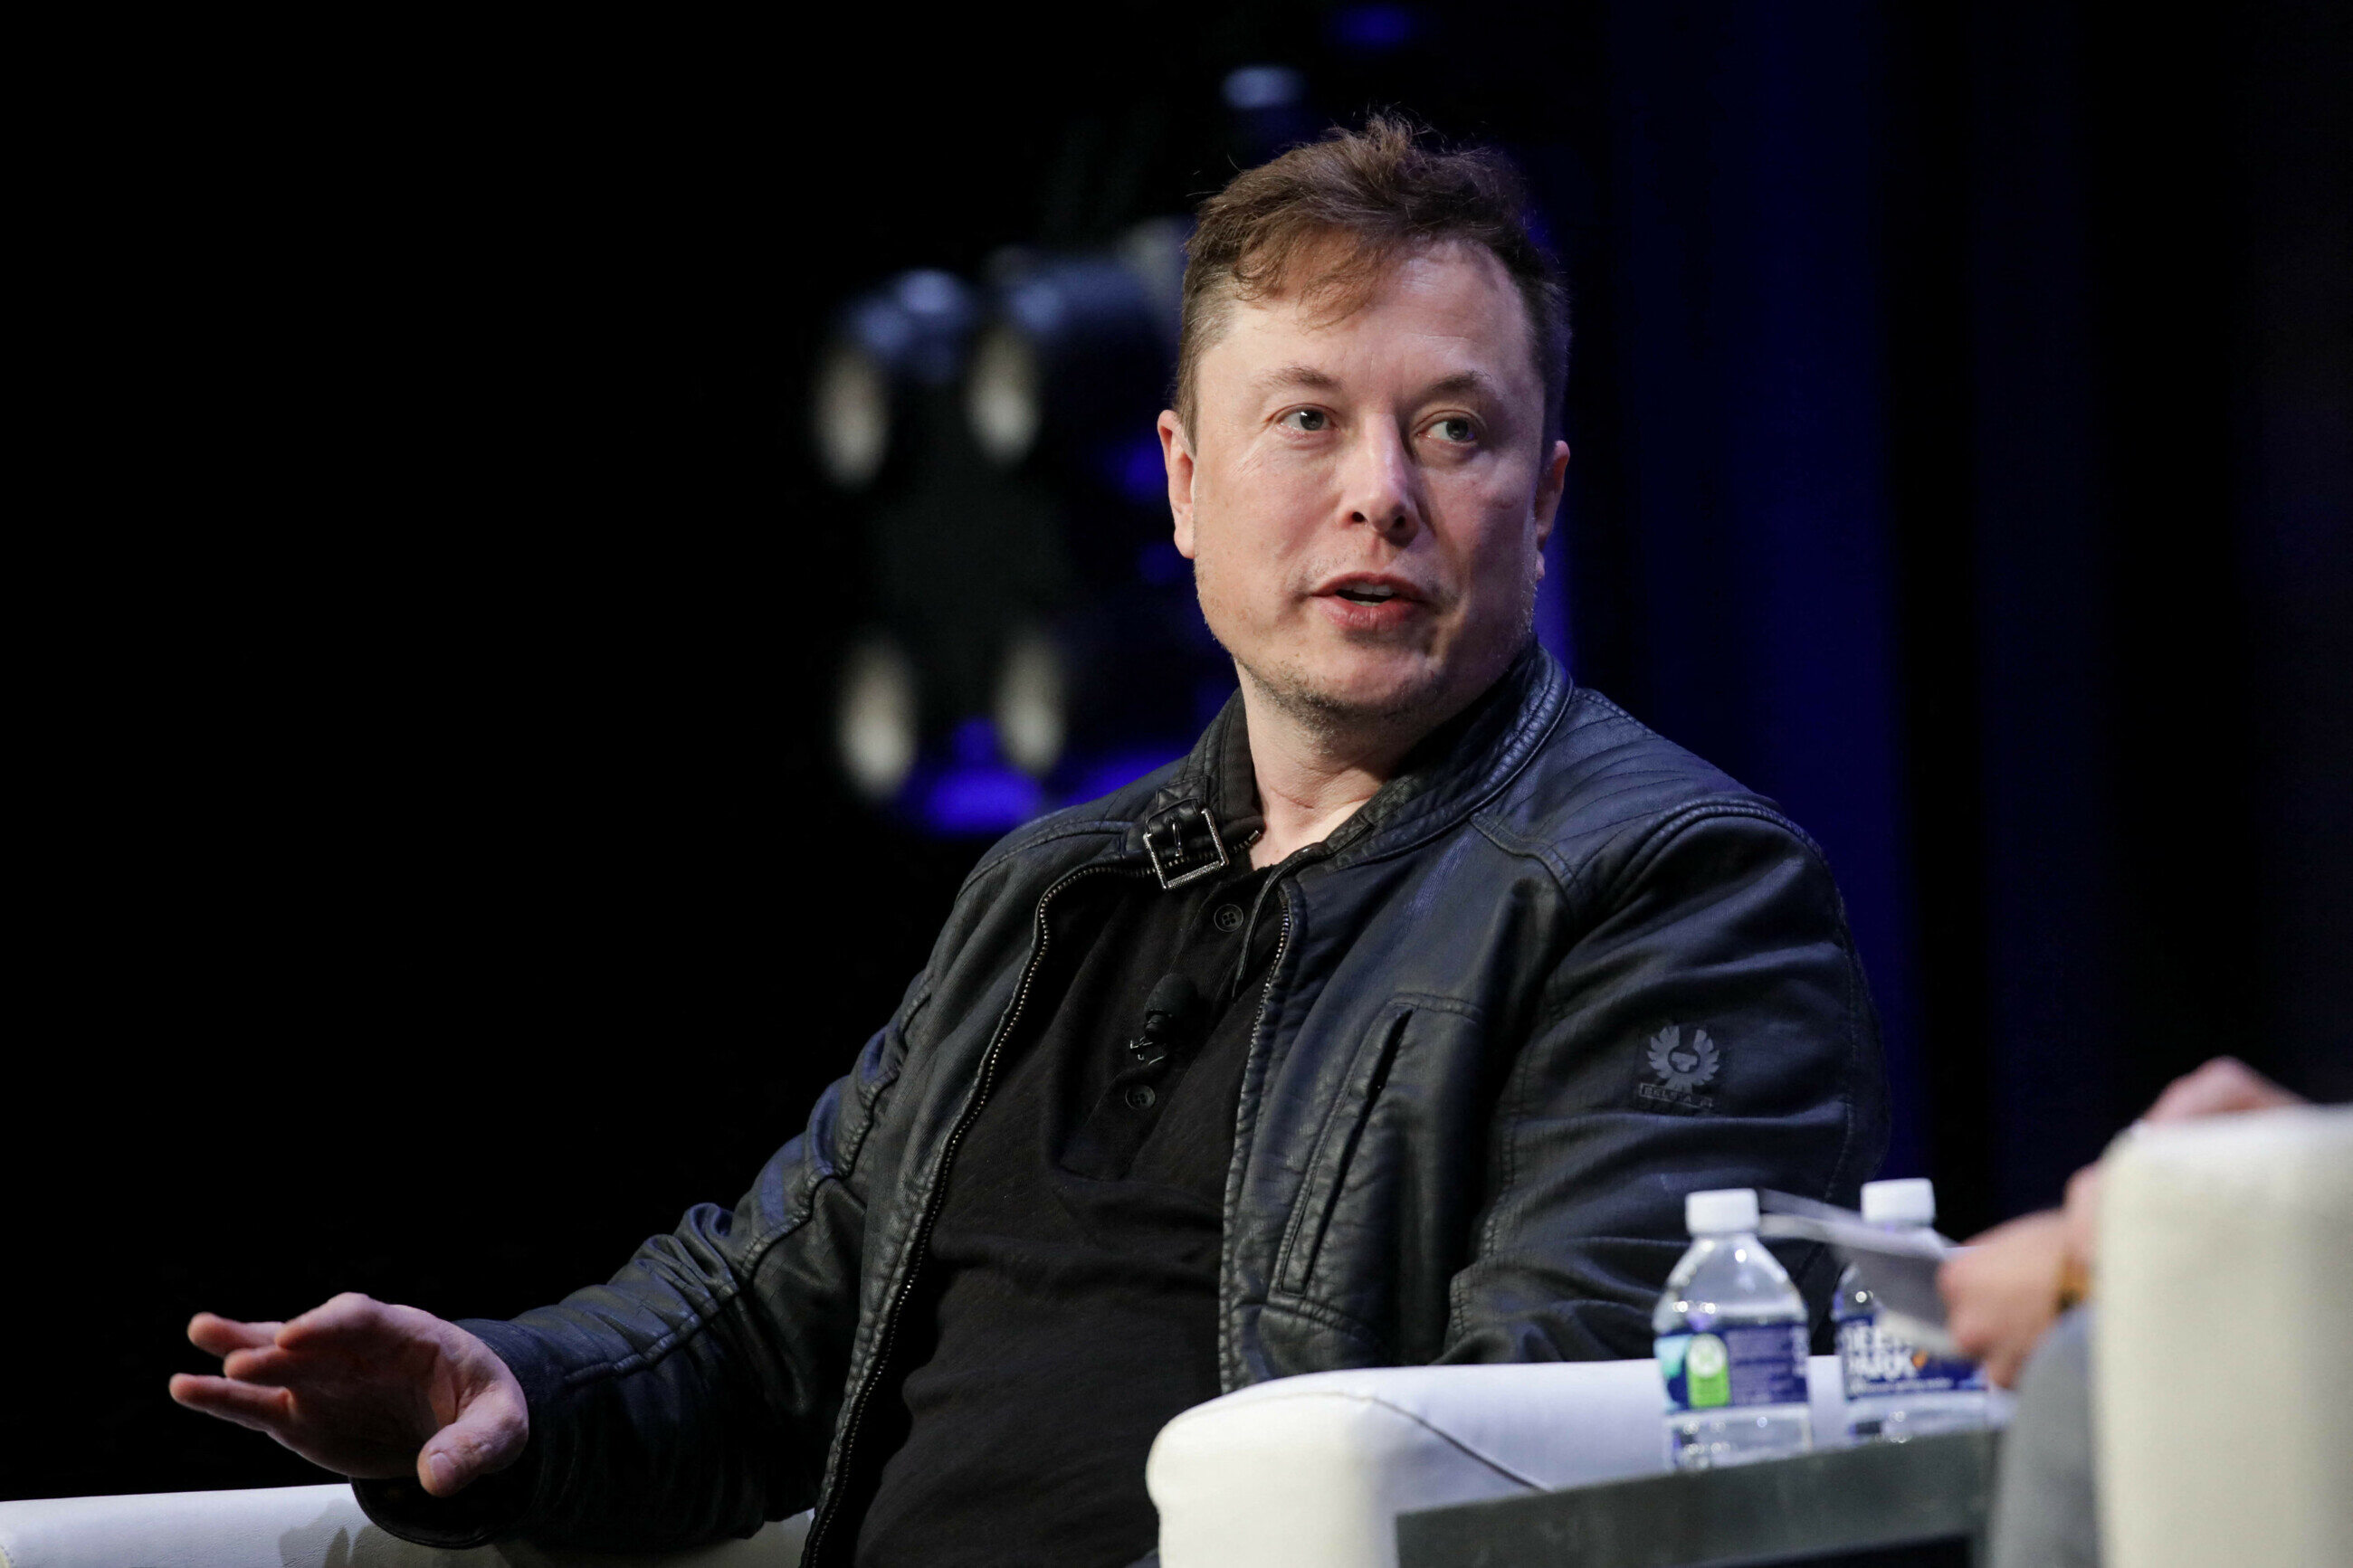 Elon Musk Szef Spacex Ziemia Si Nie Przeludnia Jest Wr Cz Przeciwnie Biznes Wprost